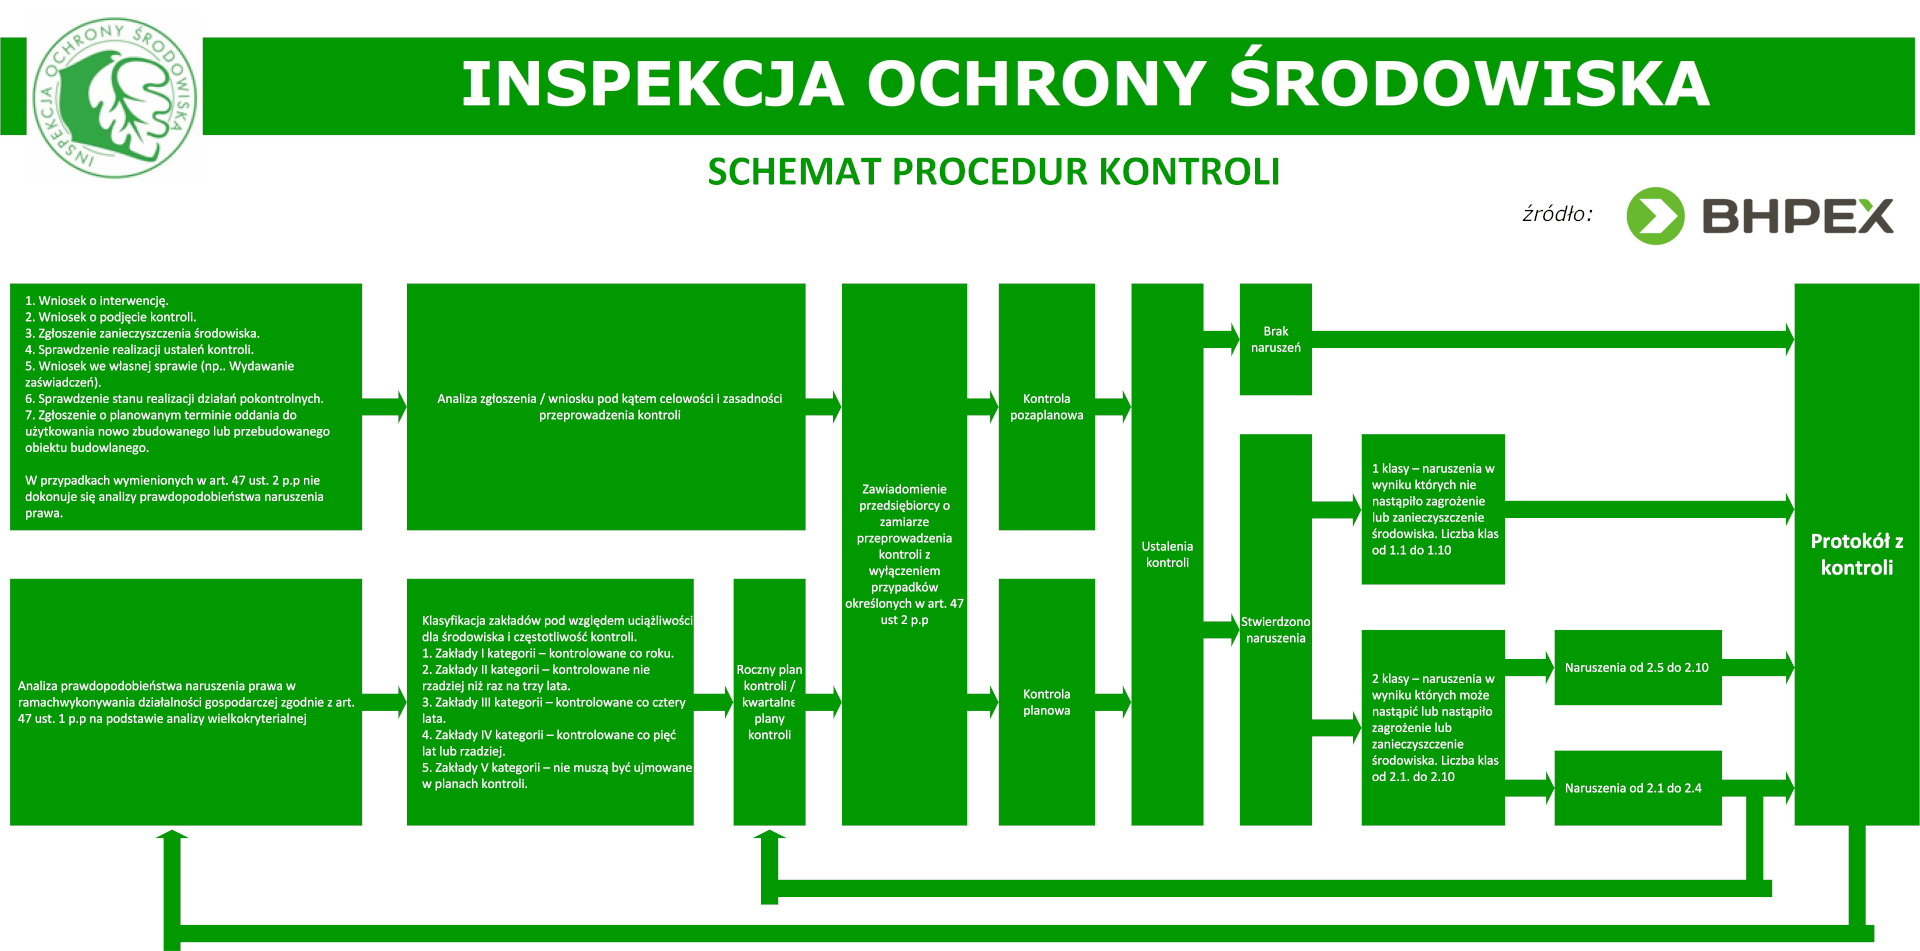 Schemat procedur kontroli Wojewódzkiego Inspektora Ochrony Środowiska